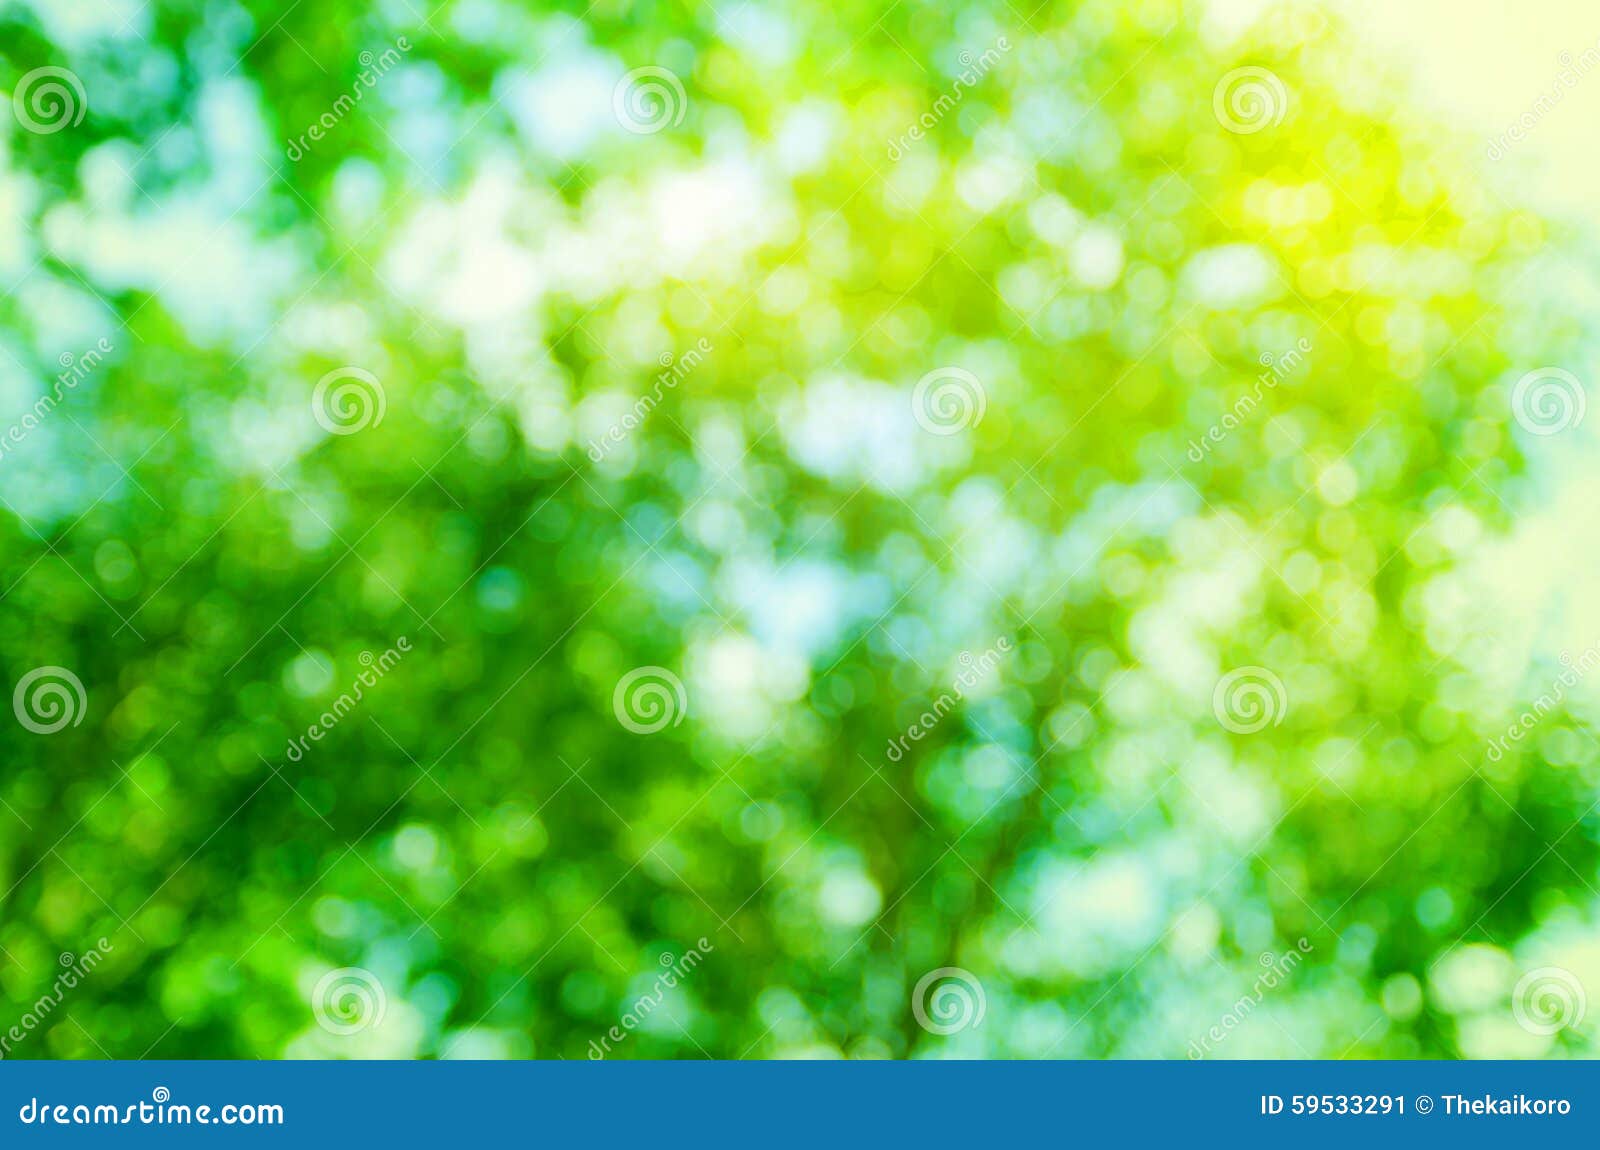 Hình nền xanh lá cây trừu tượng Bokeh mang đến cho bạn cảm giác thật mới mẻ và độc đáo. Những hình ảnh lấp lánh và mơ màng chắc chắn sẽ khiến bạn cảm thấy thích thú và muốn khám phá thêm nhiều hơn.